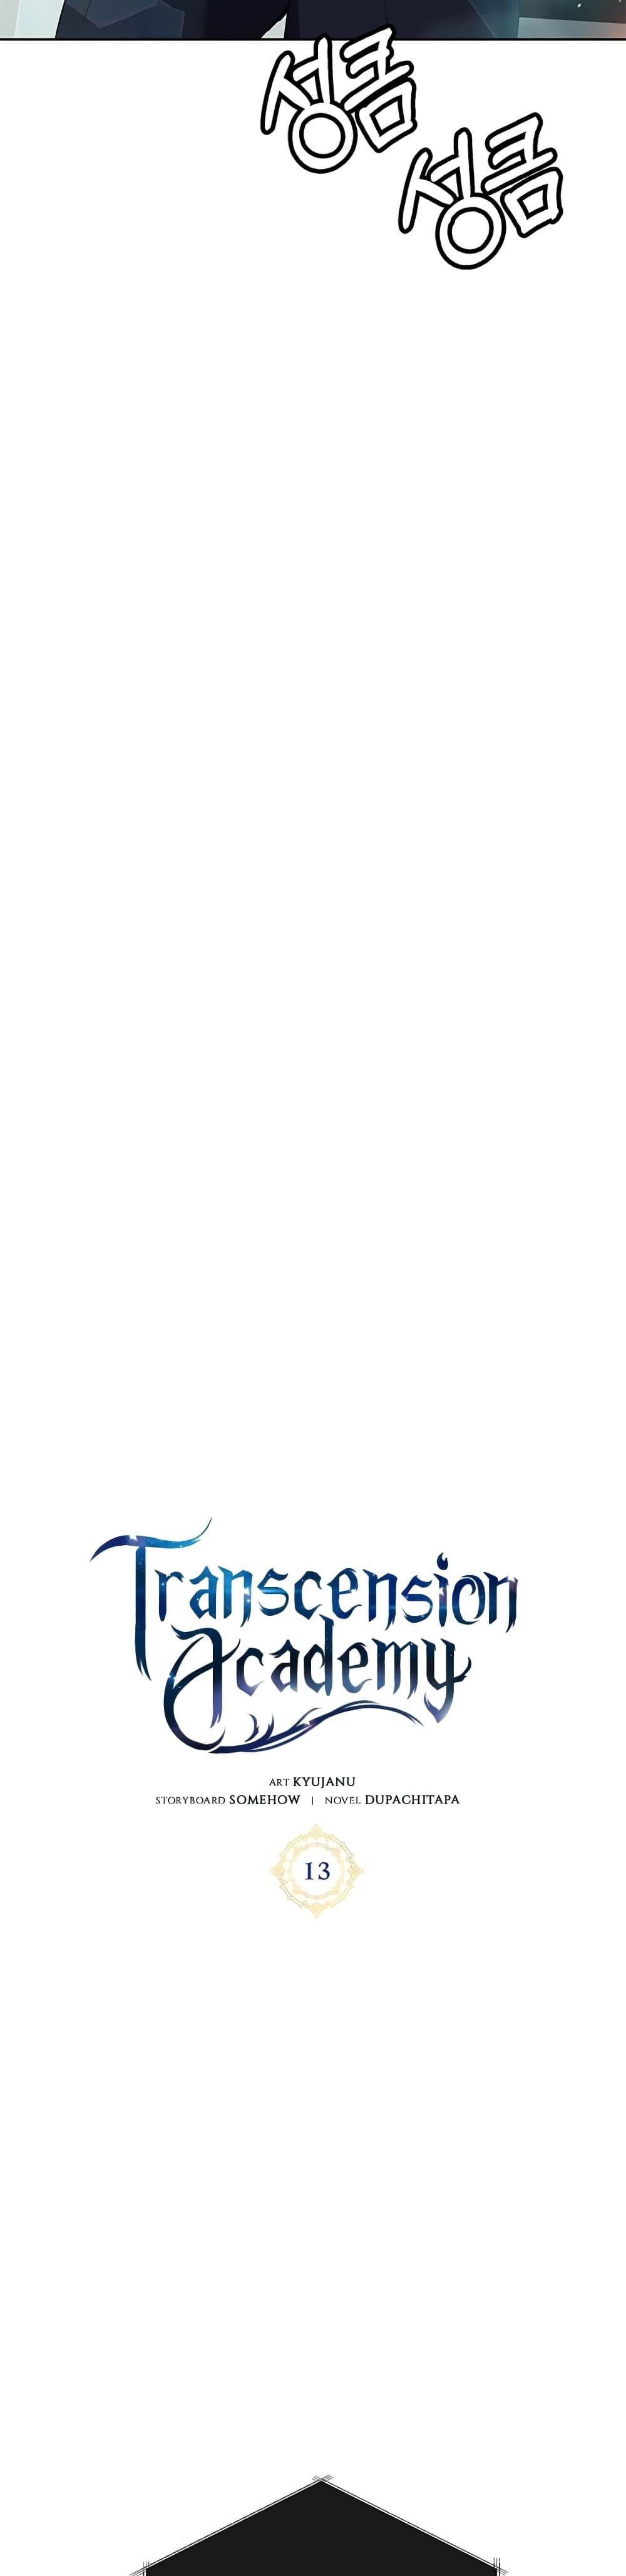 Transcension-Academy-13_19.jpg